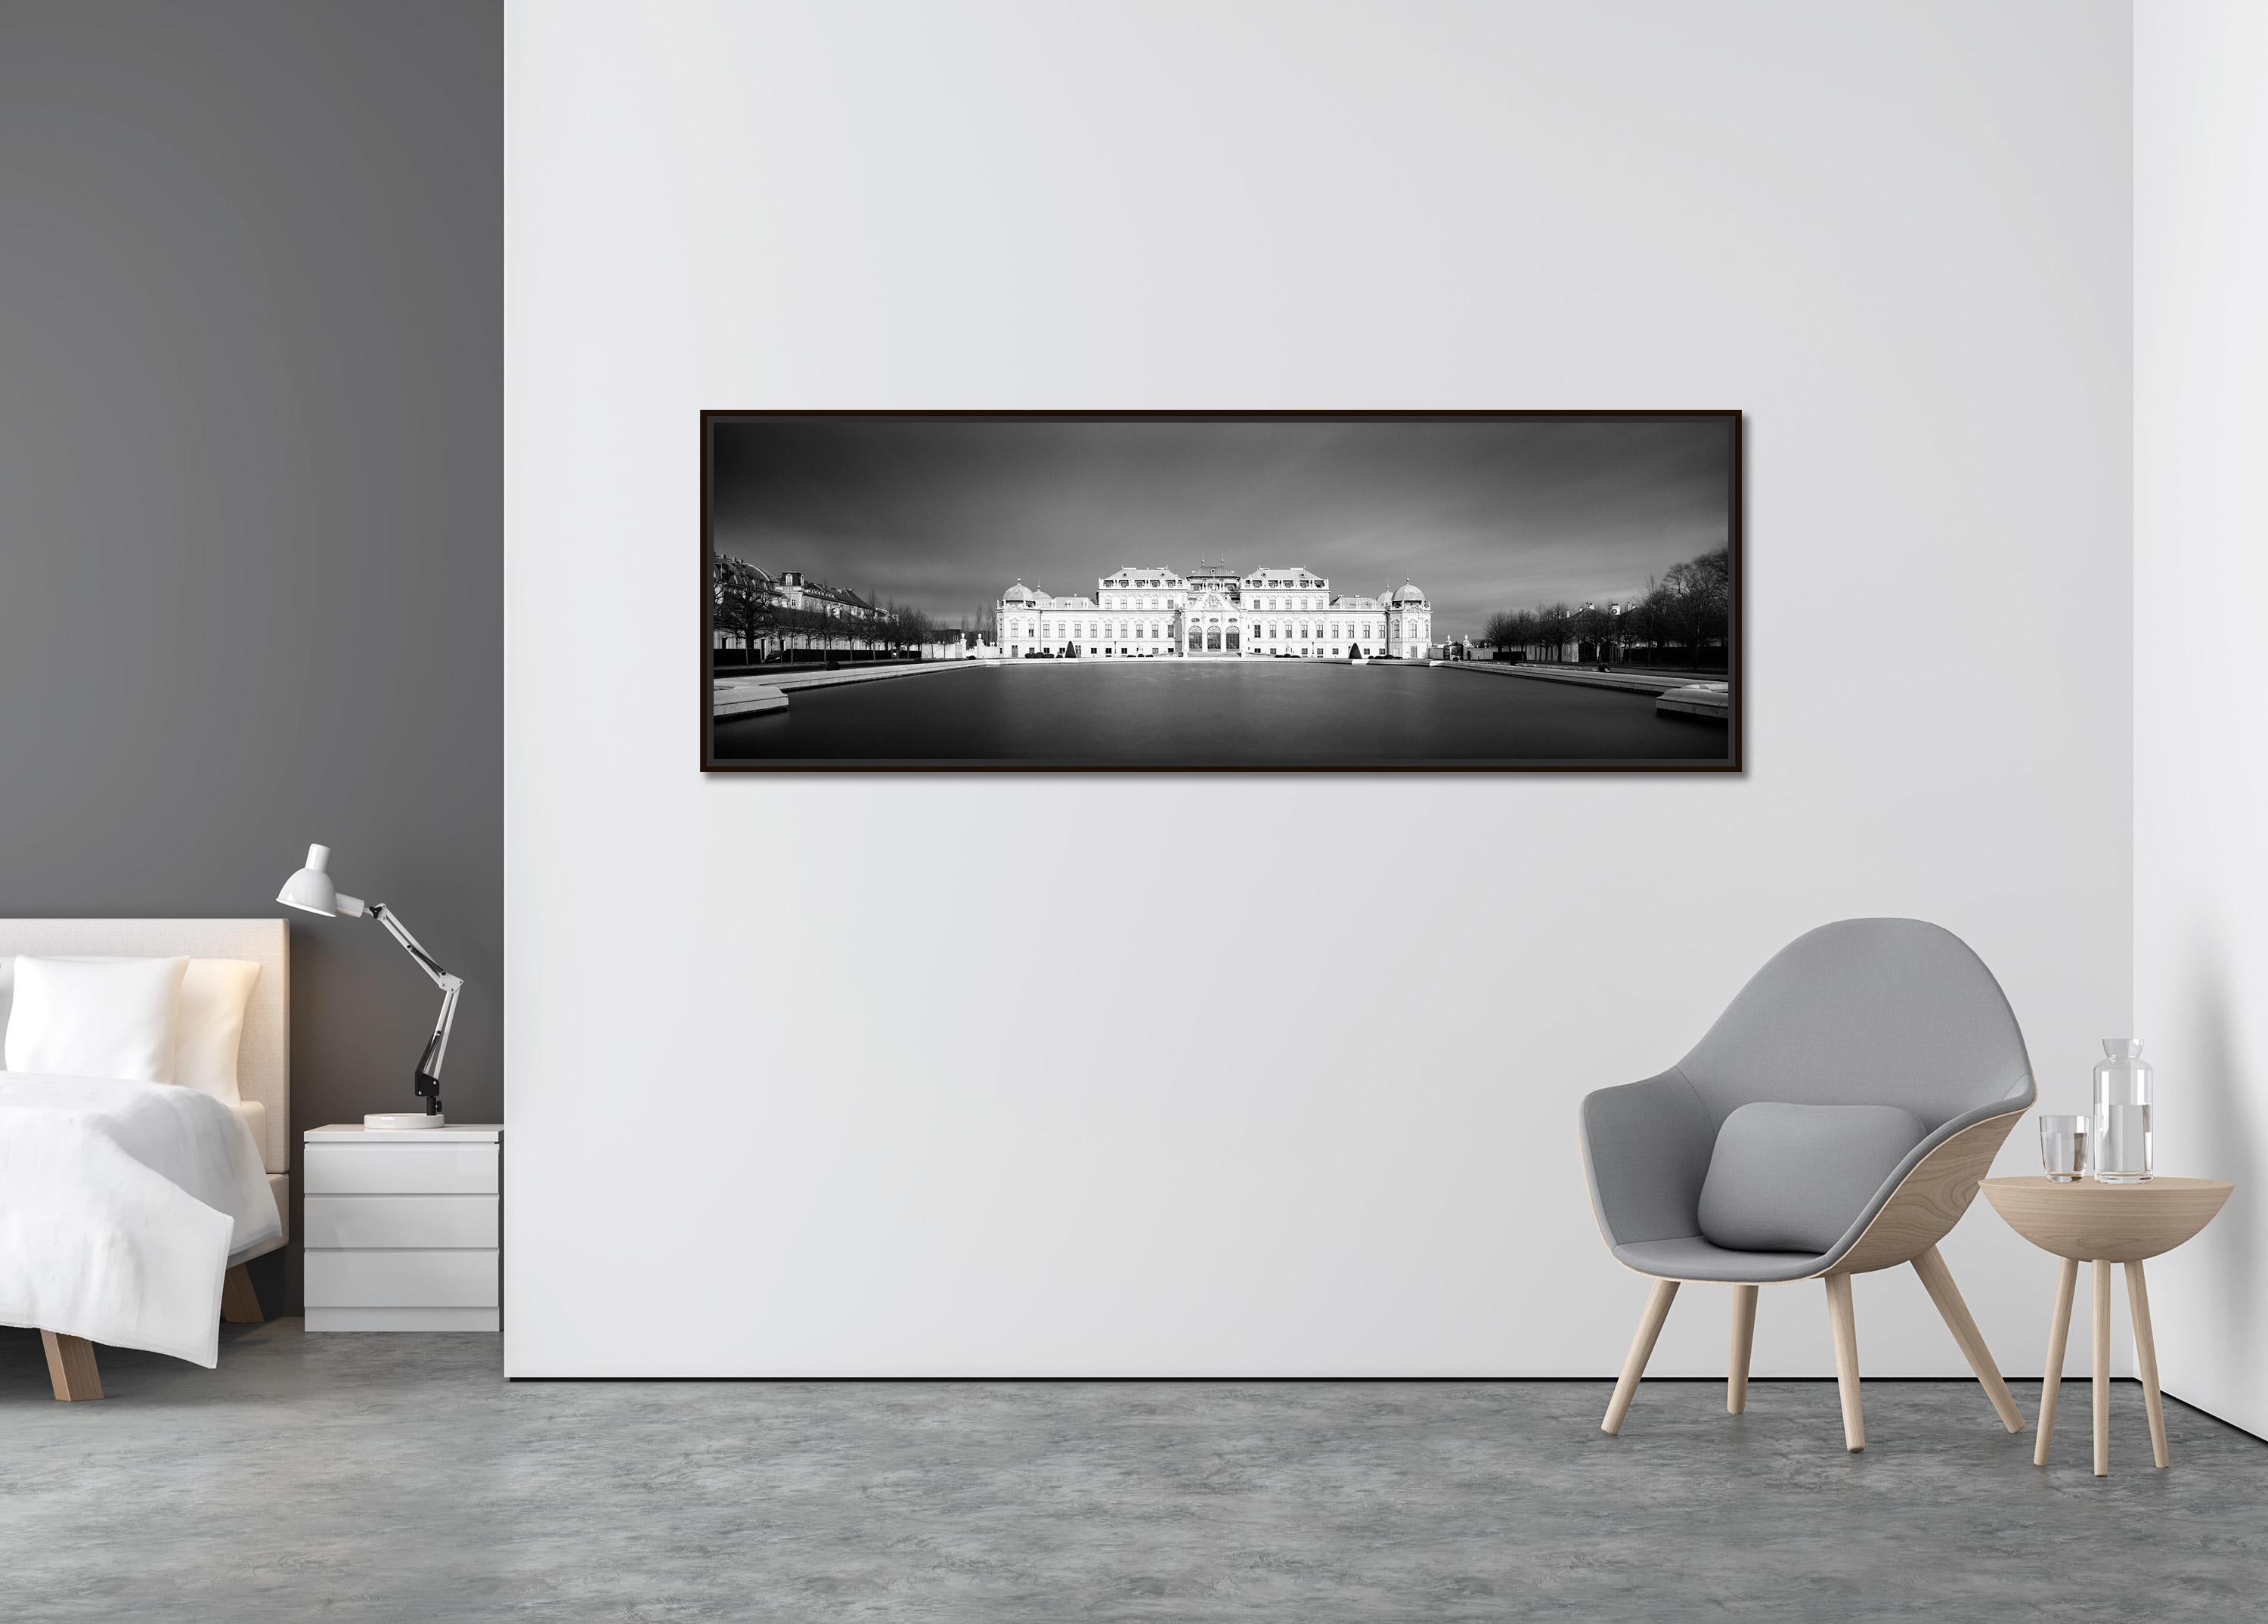 Oberes Belvedere, Panorama, dunkler Himmel, Wien, schwarz-weiß Landschaftsfotografie (Zeitgenössisch), Photograph, von Gerald Berghammer